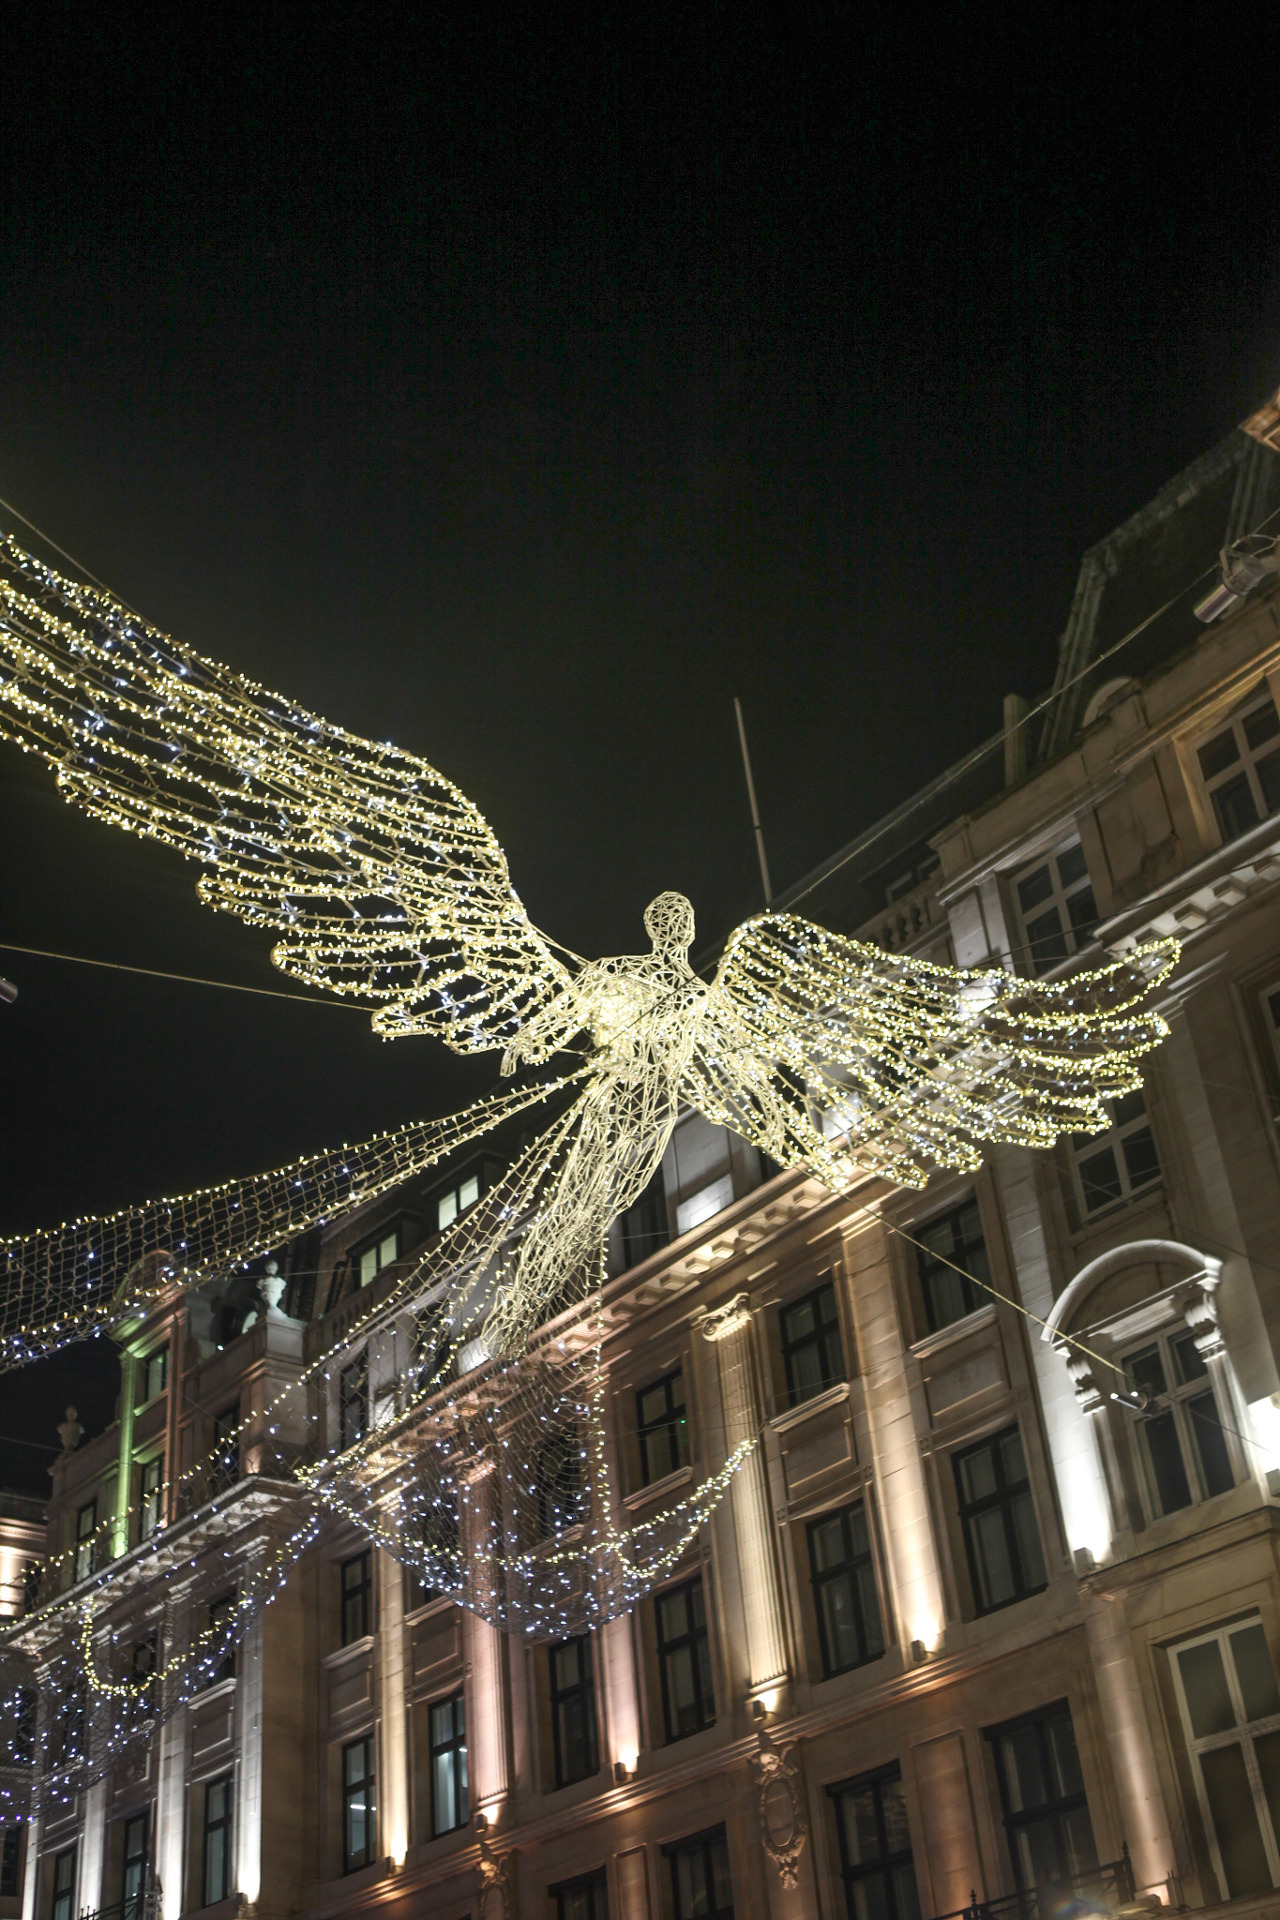 런던 거리에는 이 천사 모양 불빛 장식이 여러개 있는데, 천사들은 각각 다른 자세를 취하고 있다.